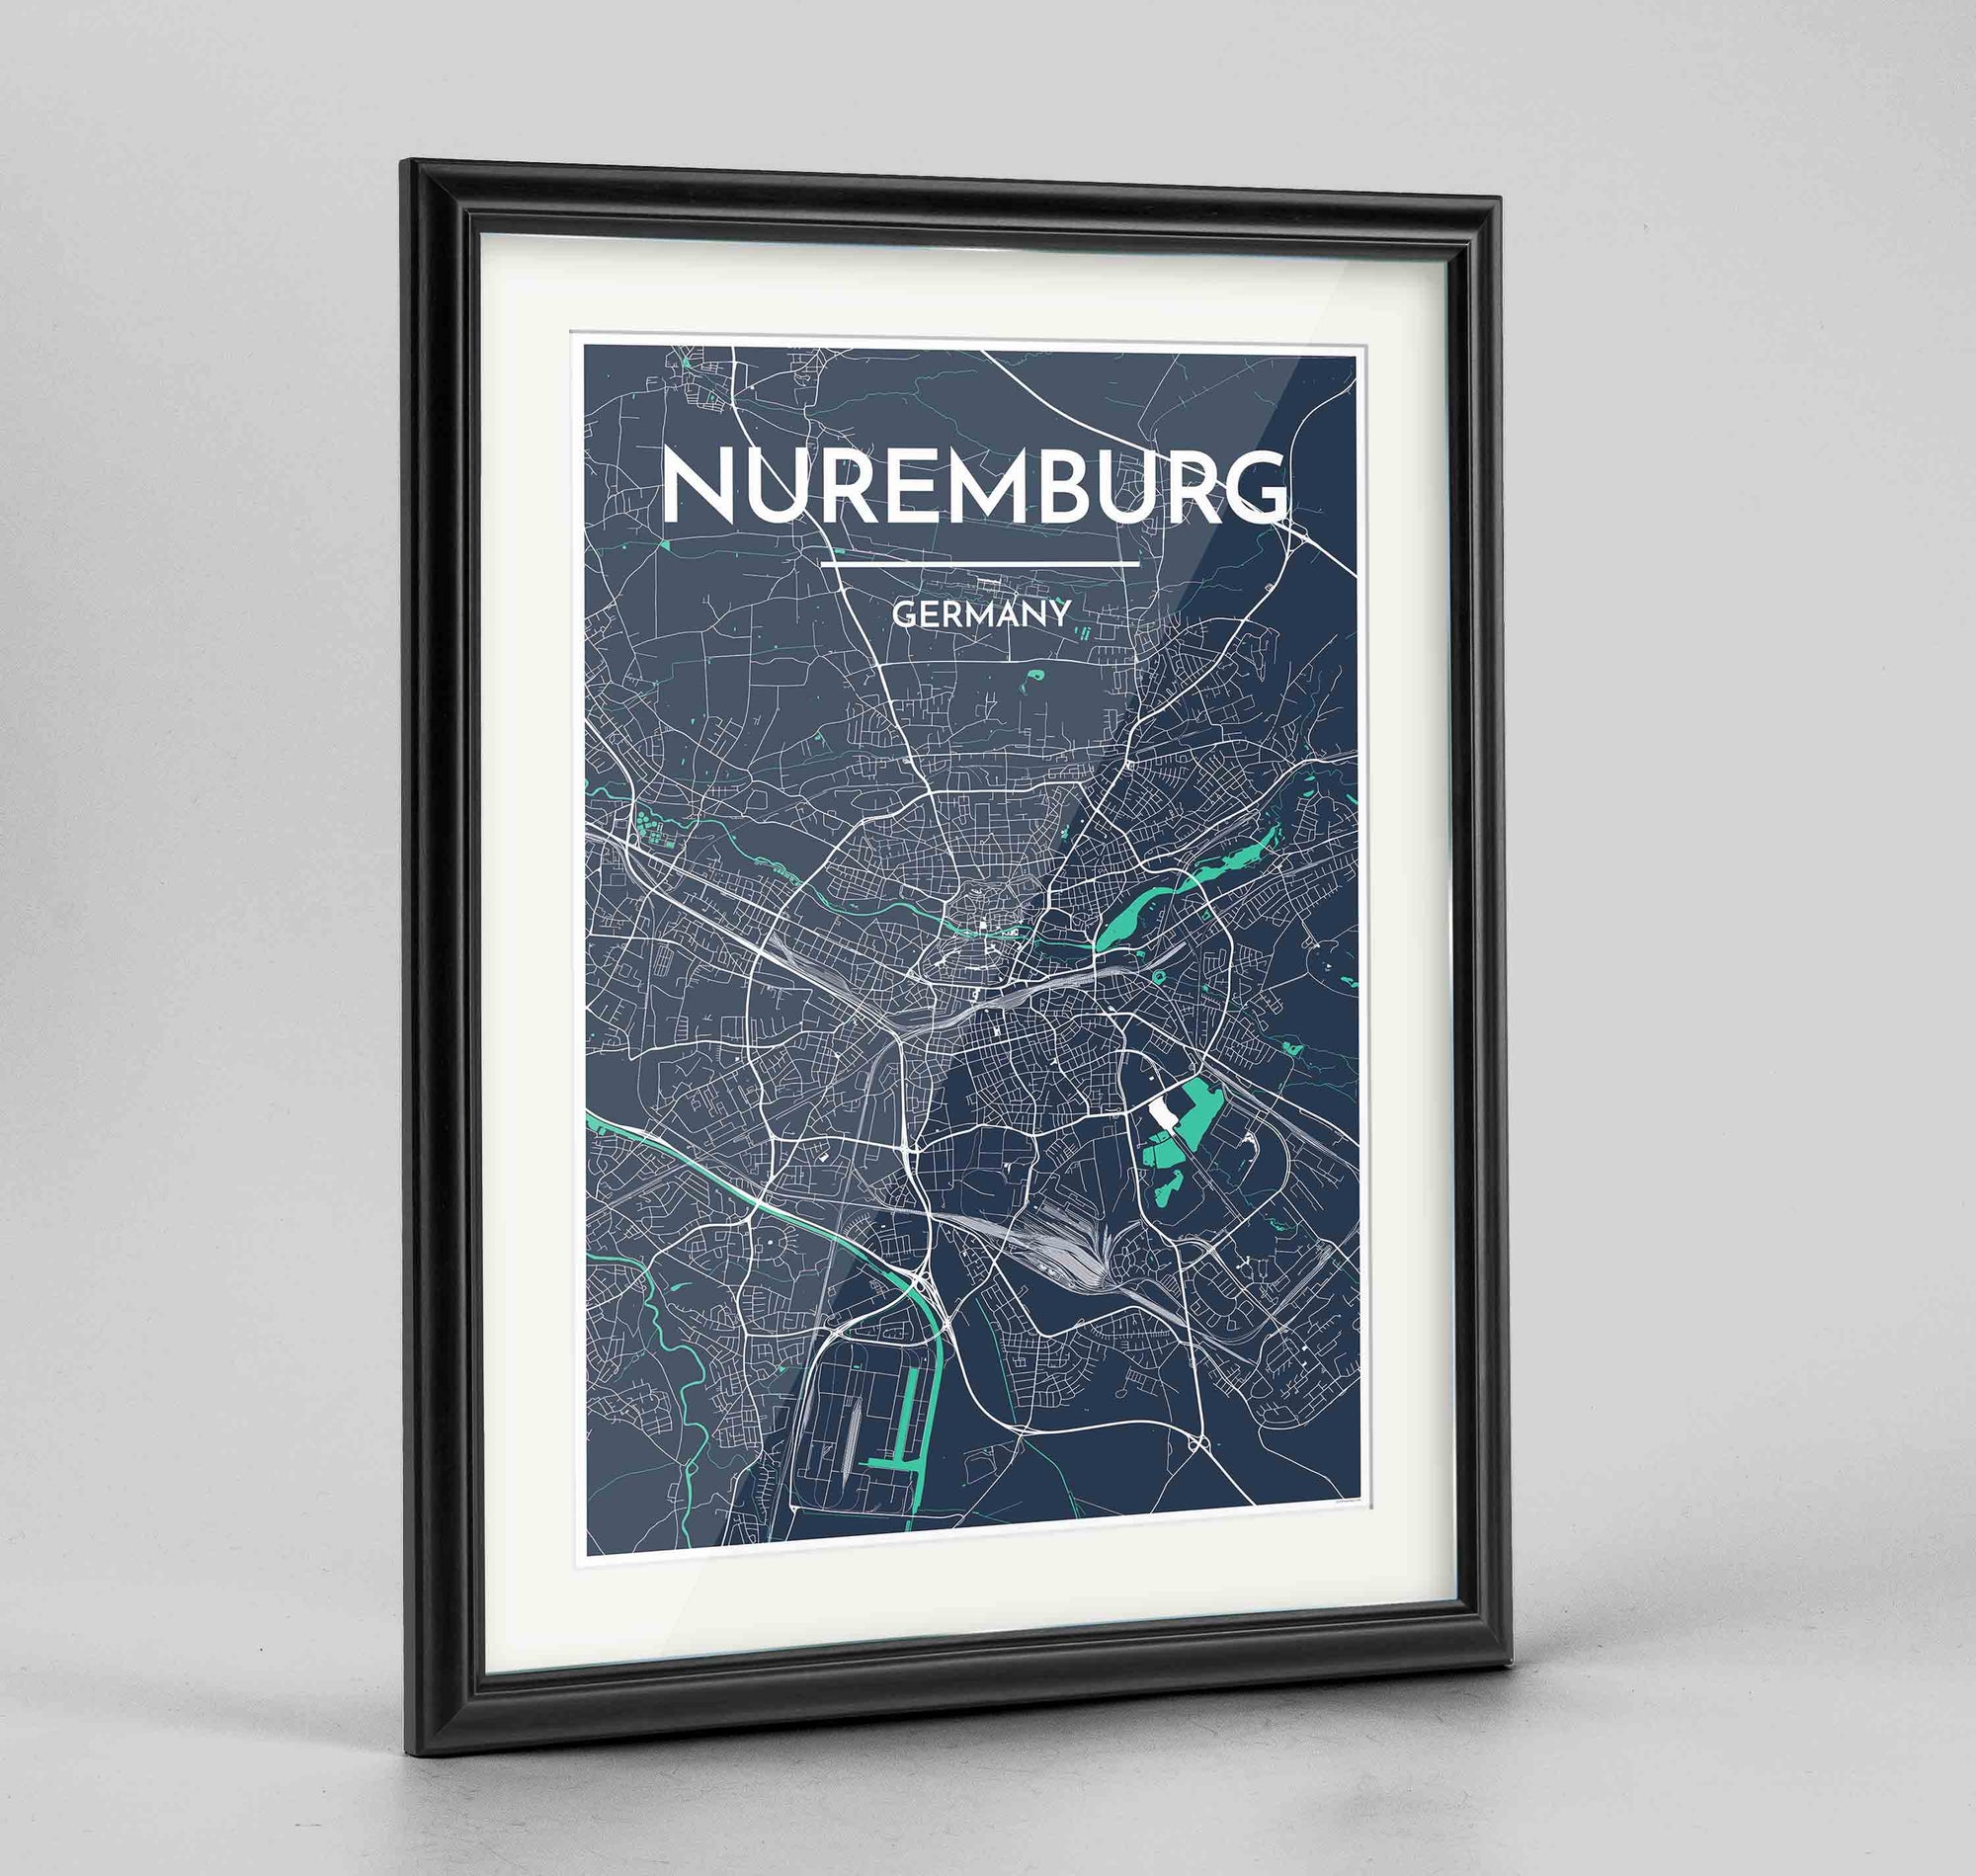 Framed Nuremburg Map Art Print 24x36" Traditional Black frame Point Two Design Group